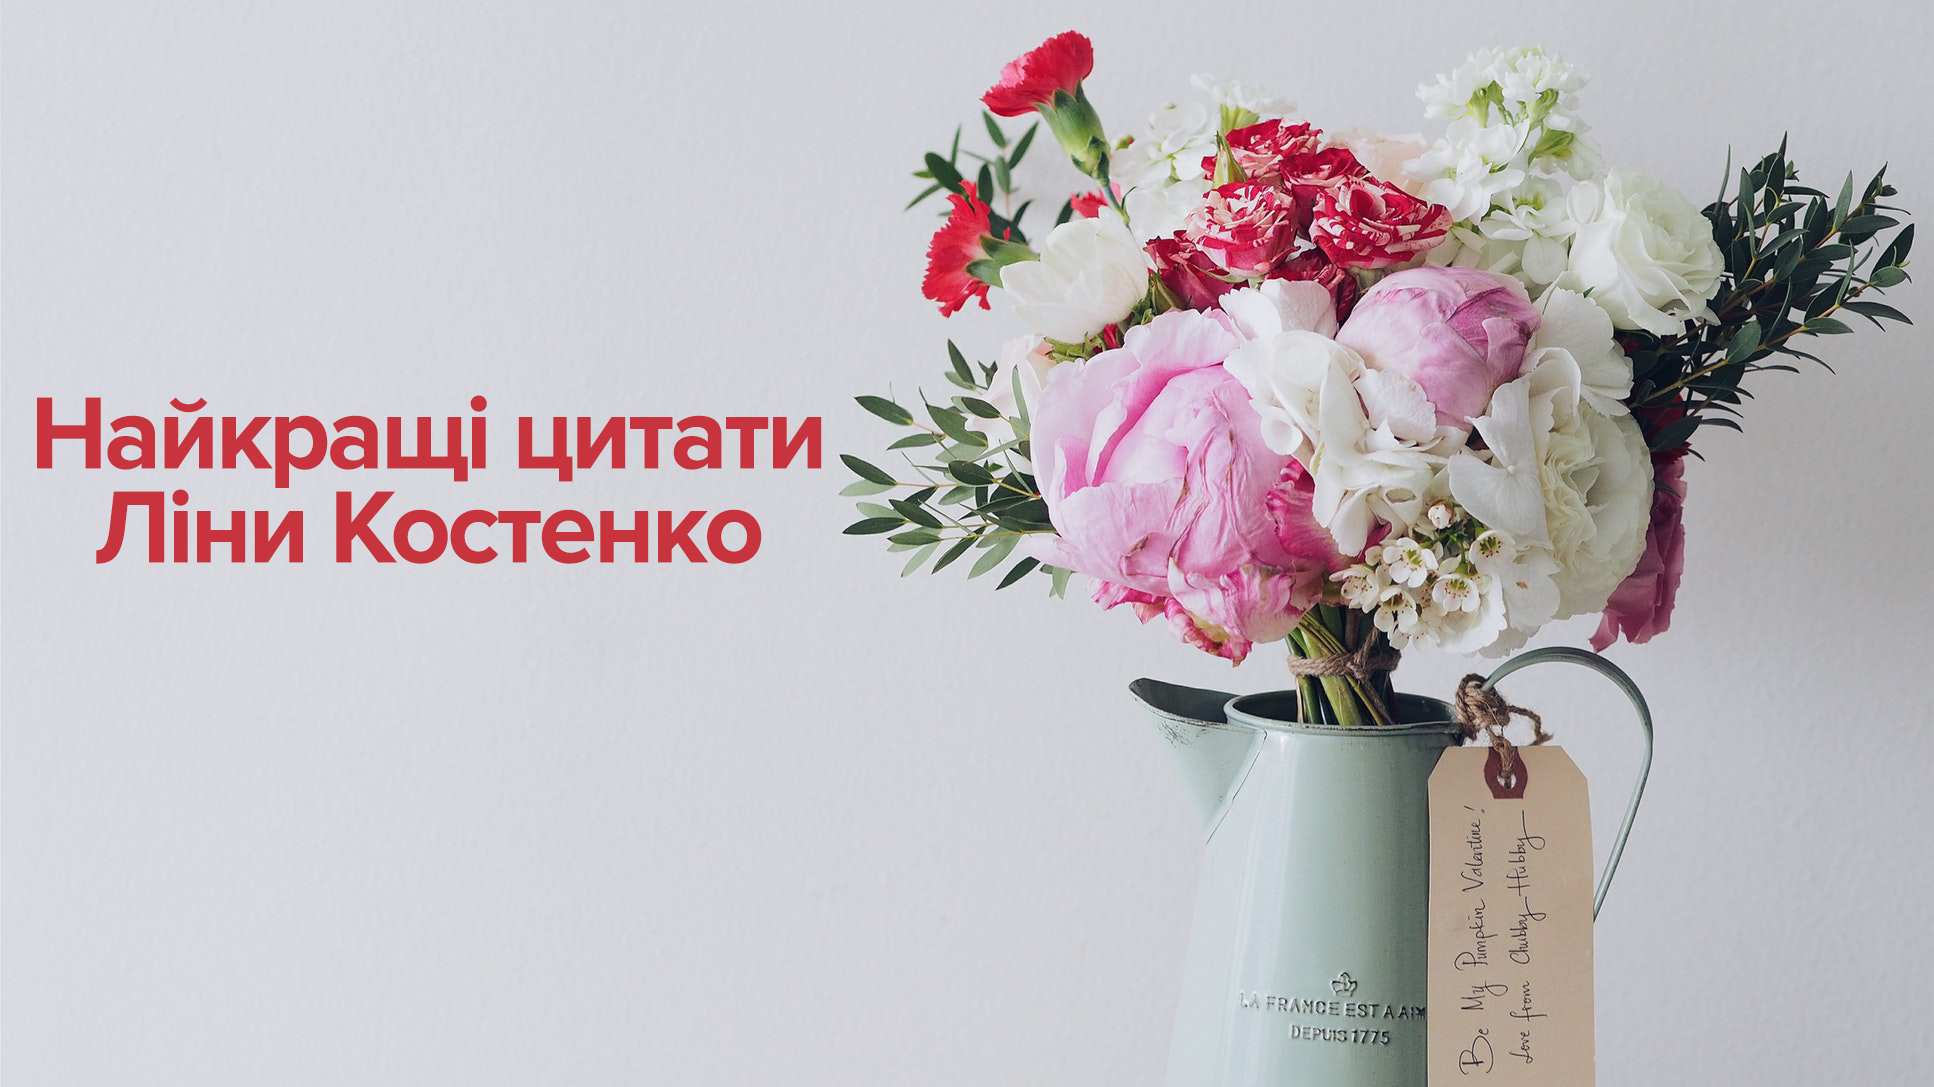 Ліна Костенко - цитати про любов, про людей, про мову, про політику, про жінок